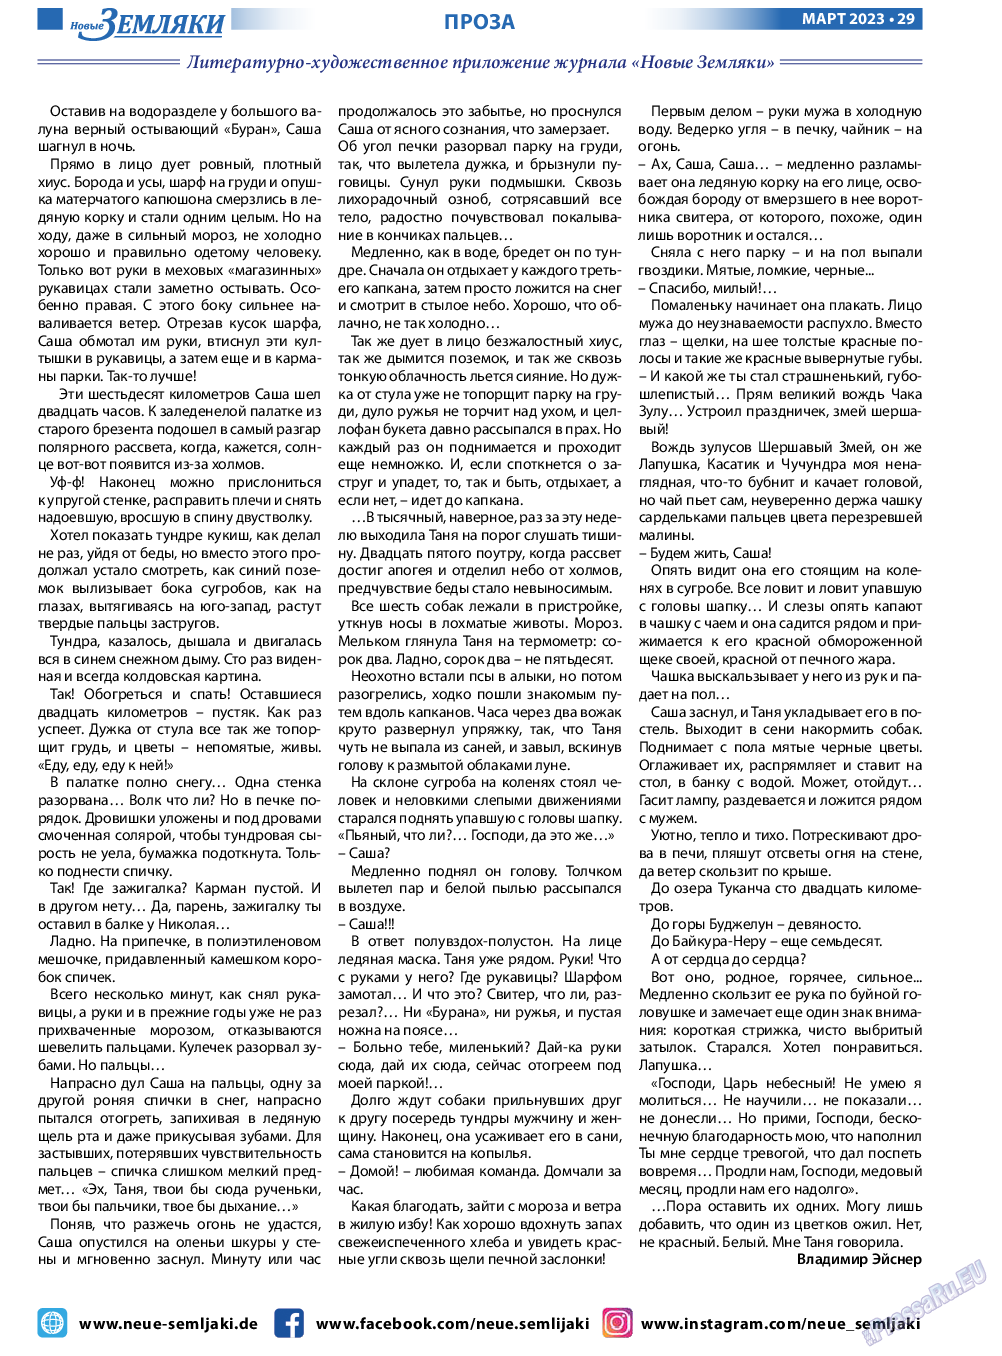 Новые Земляки, газета. 2023 №3 стр.29